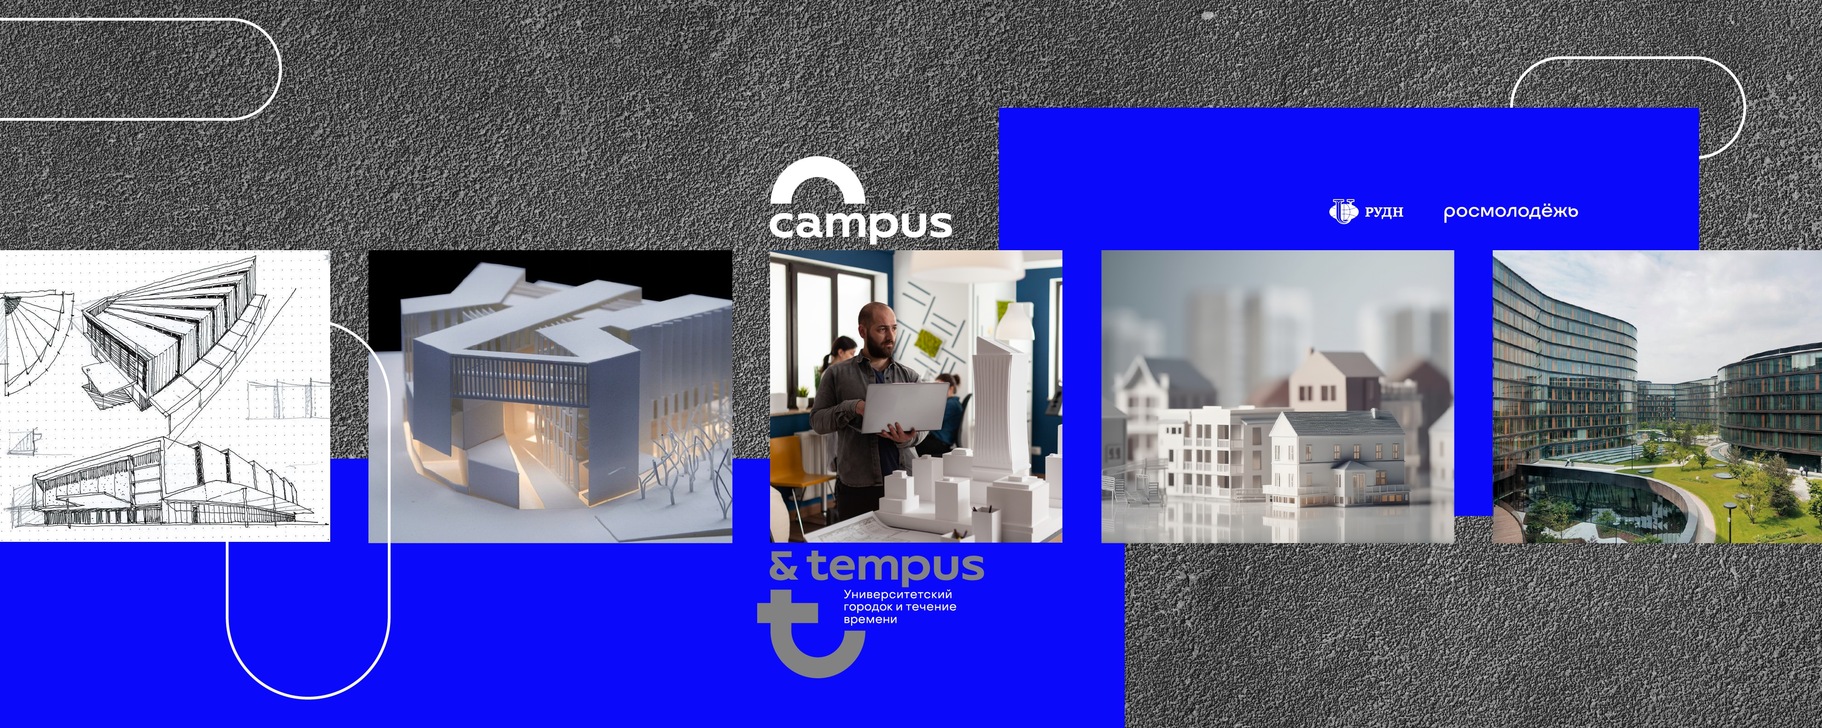 Сегодня стартовал заочный этап фестиваля «Campus & Tempus: Университетский городок и течение времени»